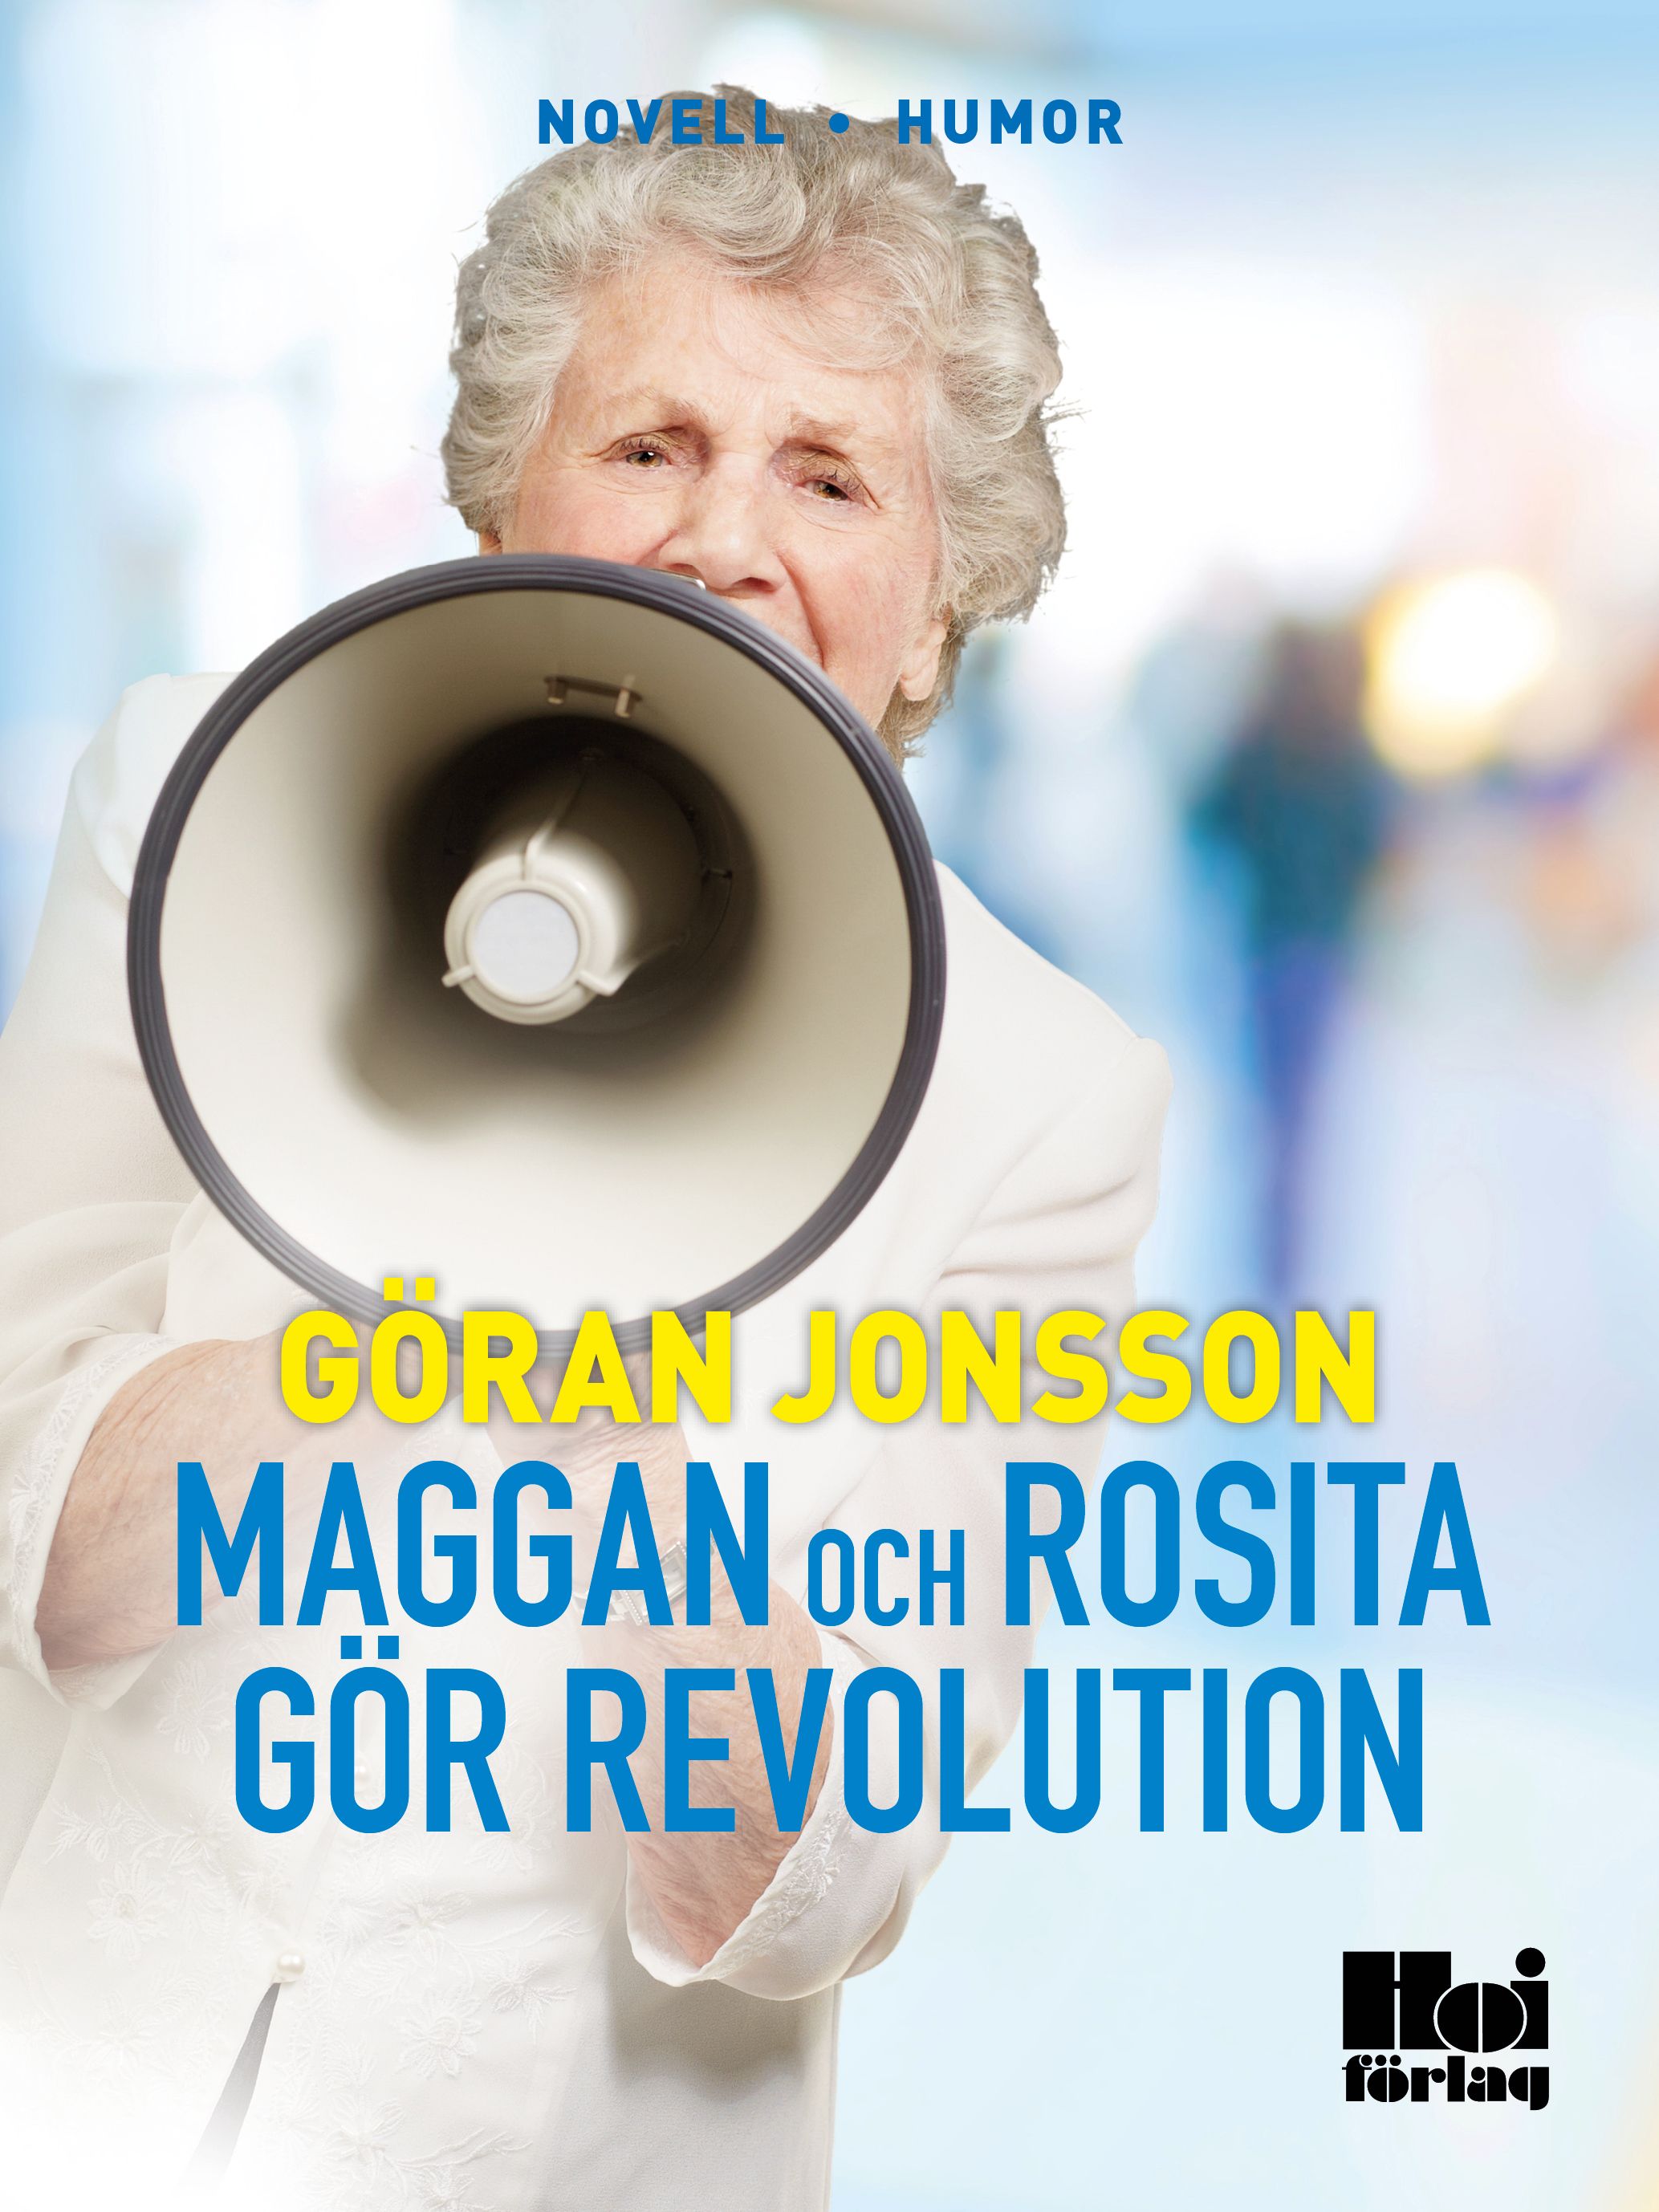 Maggan och Rosita gör revolution, e-bok av Göran Jonsson